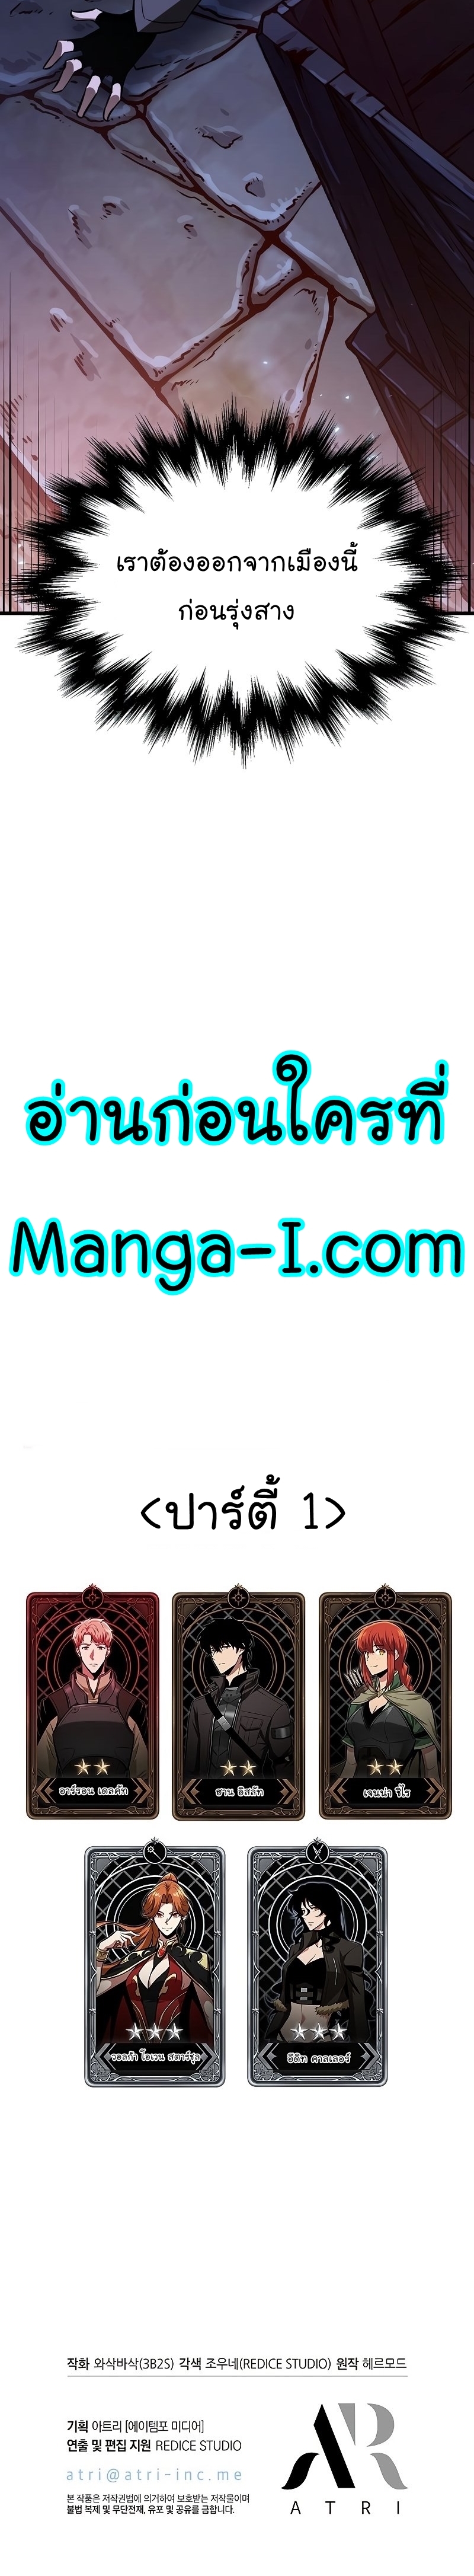 Manga I Manwha Pick Me 52 (42)